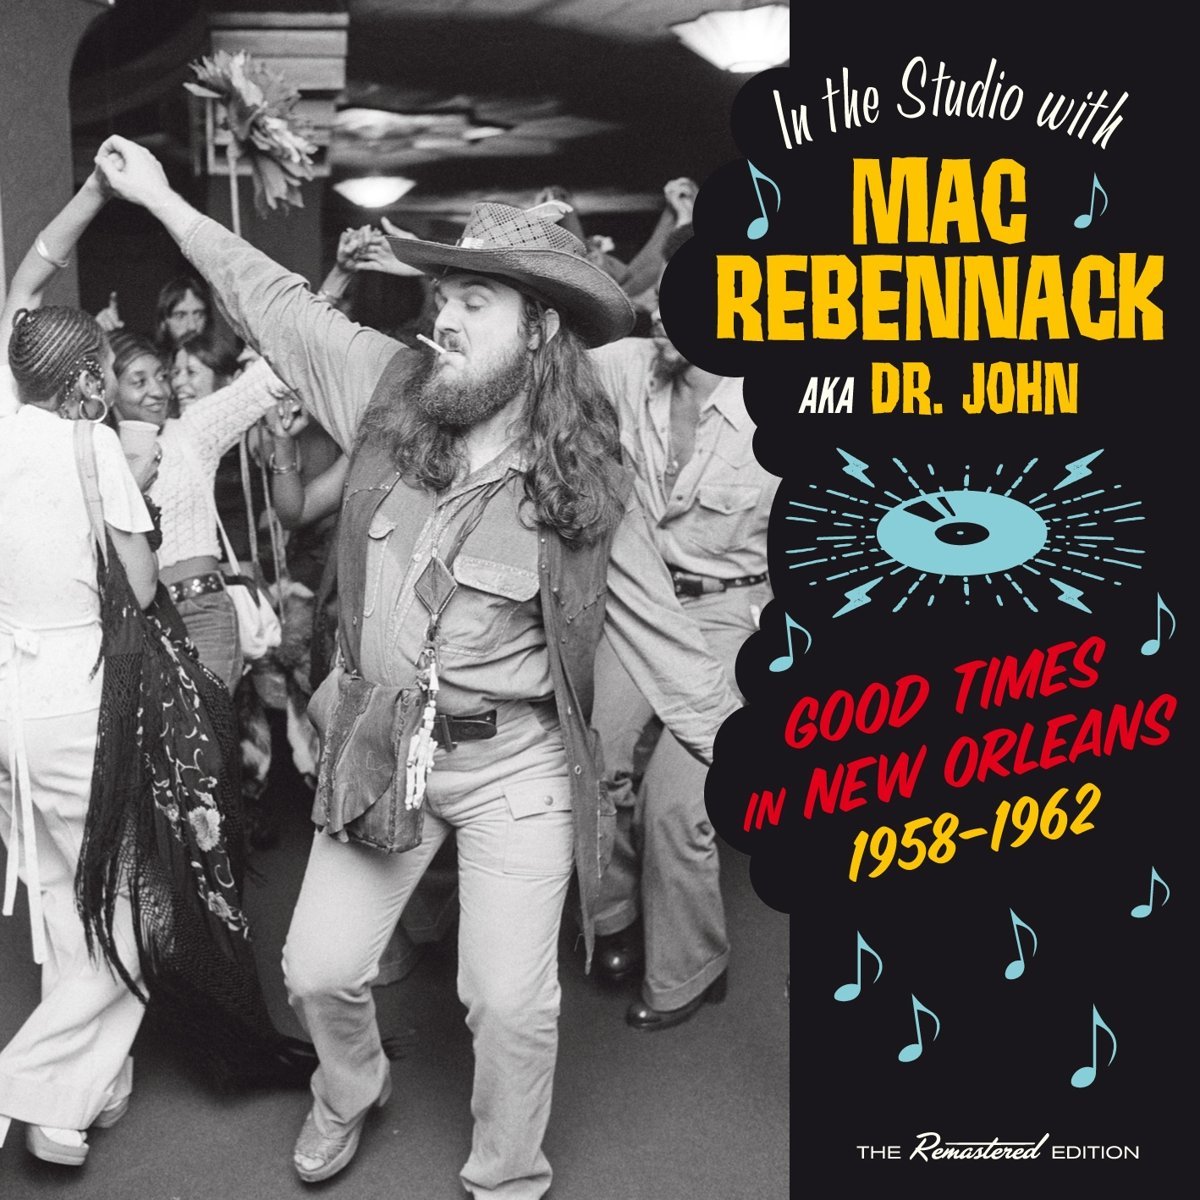 MAC REBENNACK (aka DR. JOHN) / IN THE STUDIO WITH MAC REBENNACK AKA DR.JOHN - GOOD TIMES IN NEW ORLEANS 1958-1962